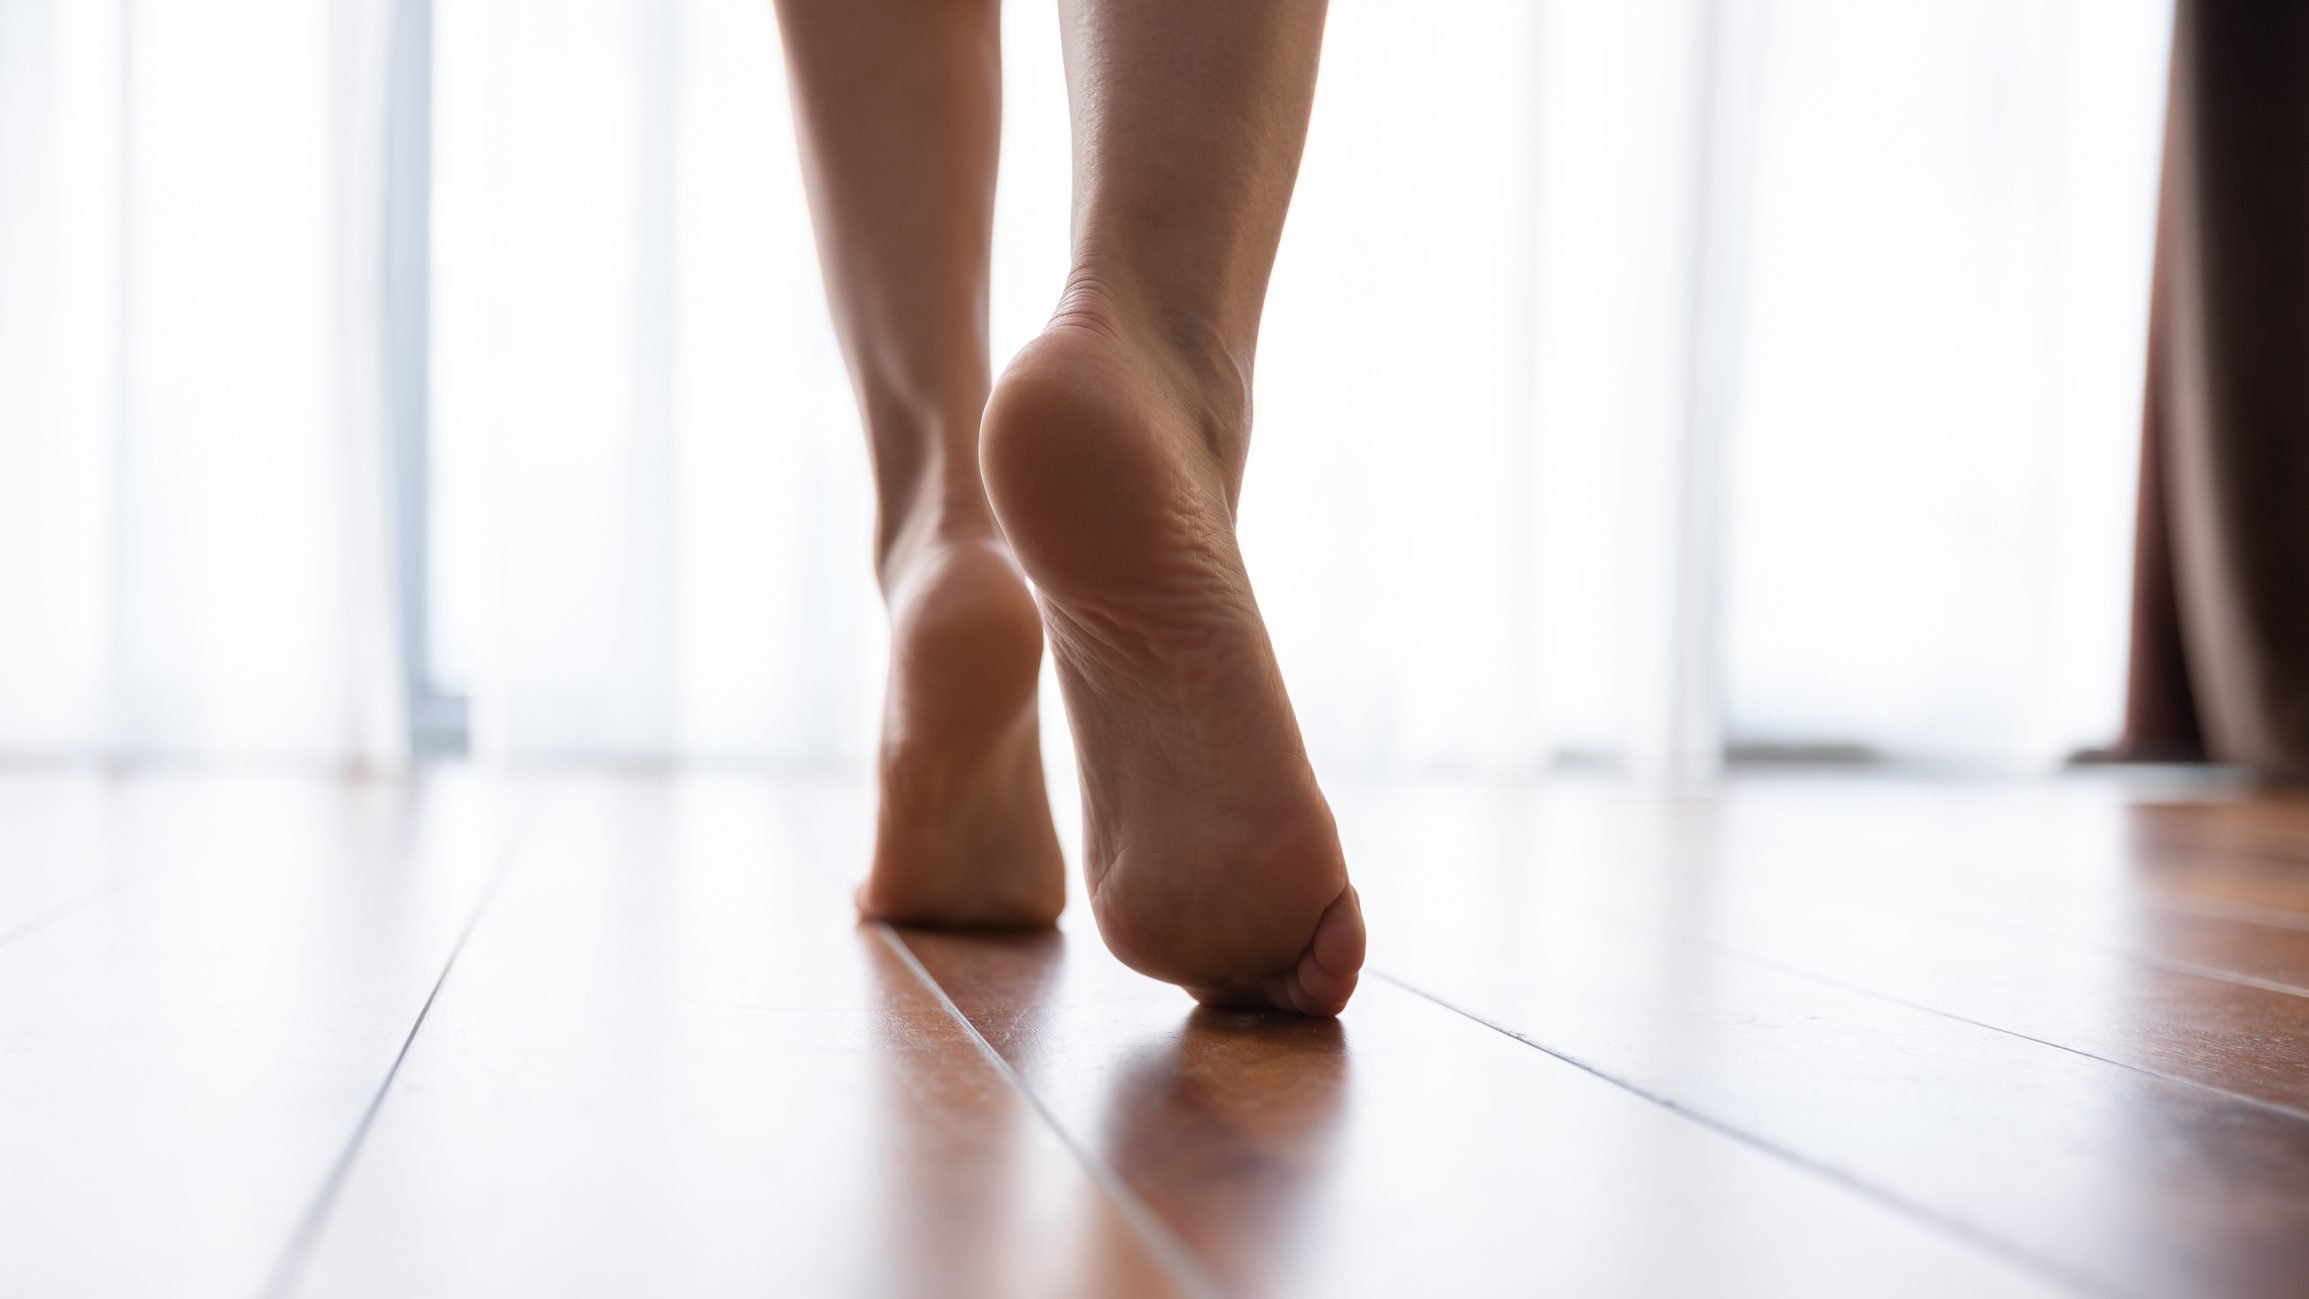 zbliżenie kobiecych stóp chodzenia w domu's feet walking in home